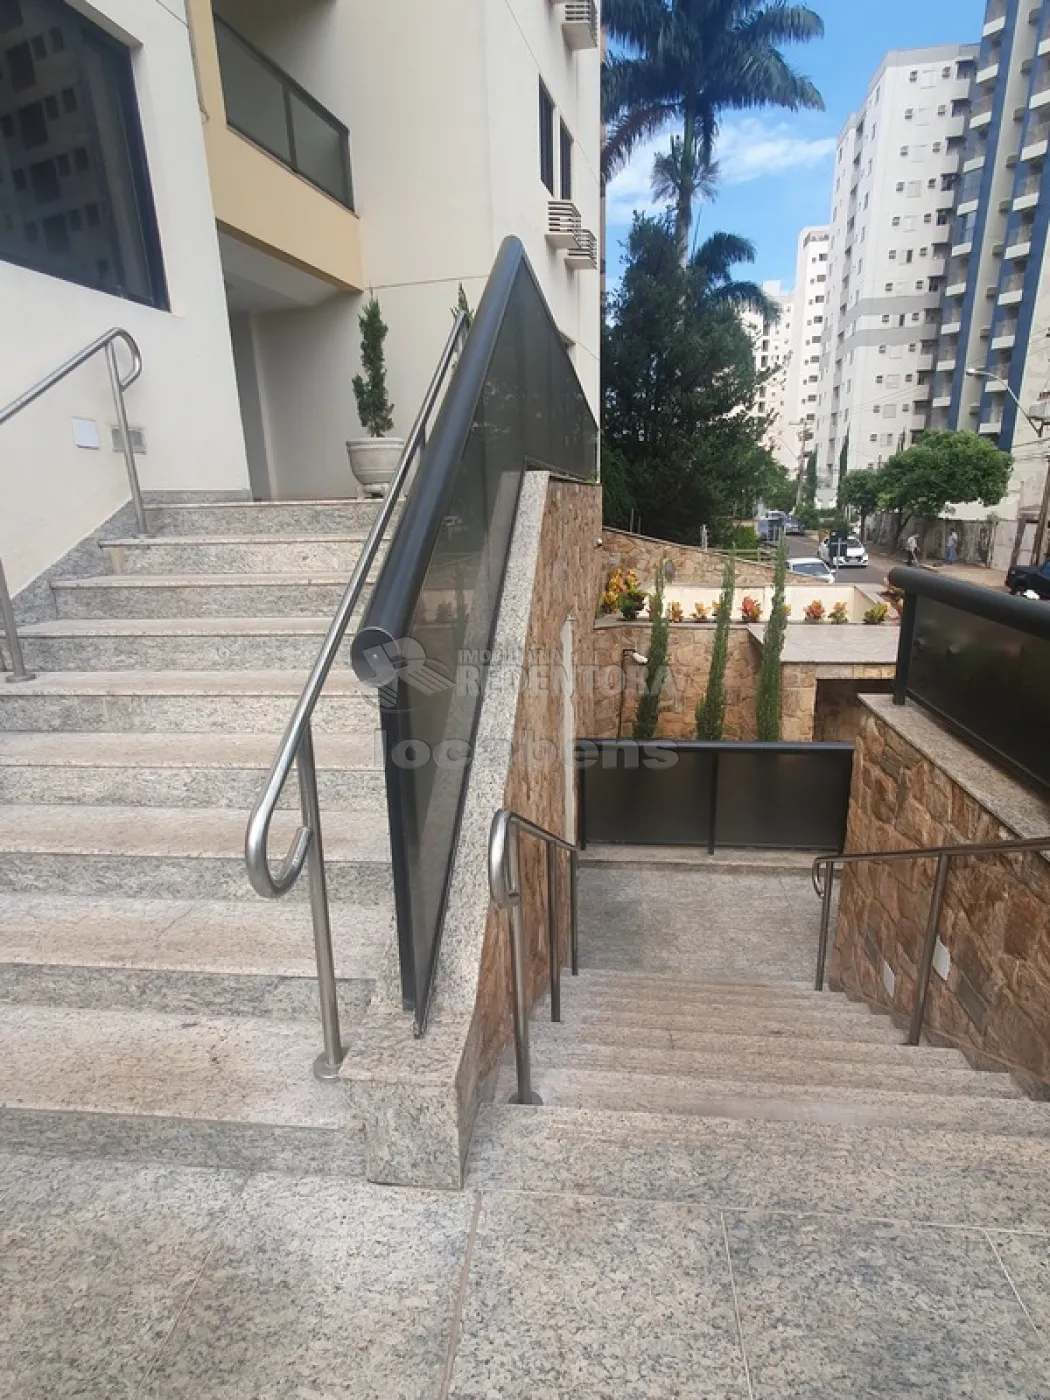 Comprar Apartamento / Padrão em São José do Rio Preto apenas R$ 350.000,00 - Foto 5